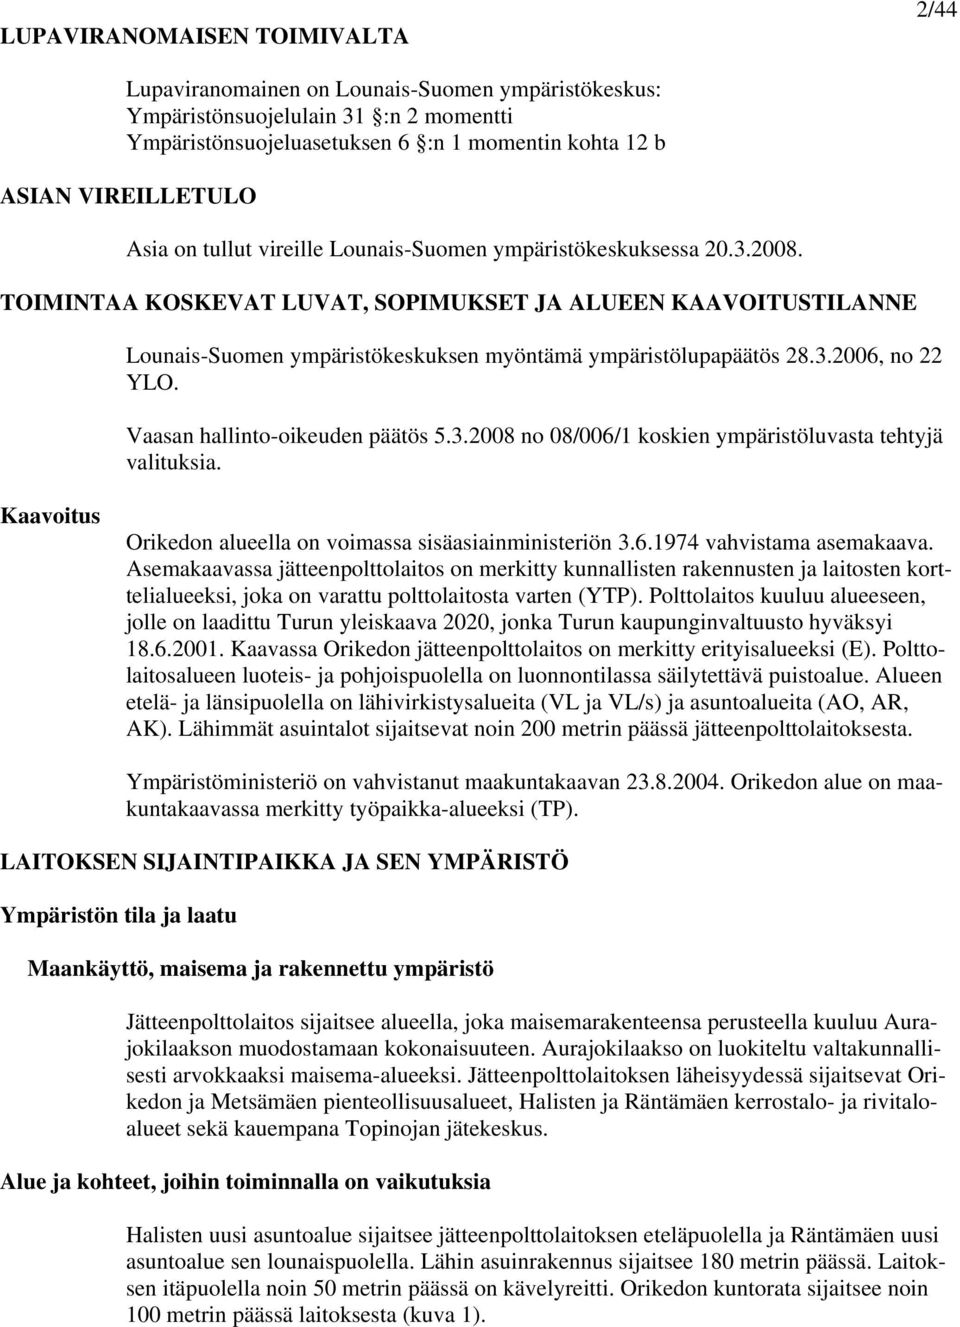 TOIMINTAA KOSKEVAT LUVAT, SOPIMUKSET JA ALUEEN KAAVOITUSTILANNE Lounais-Suomen ympäristökeskuksen myöntämä ympäristölupapäätös 28.3.2006, no 22 YLO. Vaasan hallinto-oikeuden päätös 5.3.2008 no 08/006/1 koskien ympäristöluvasta tehtyjä valituksia.